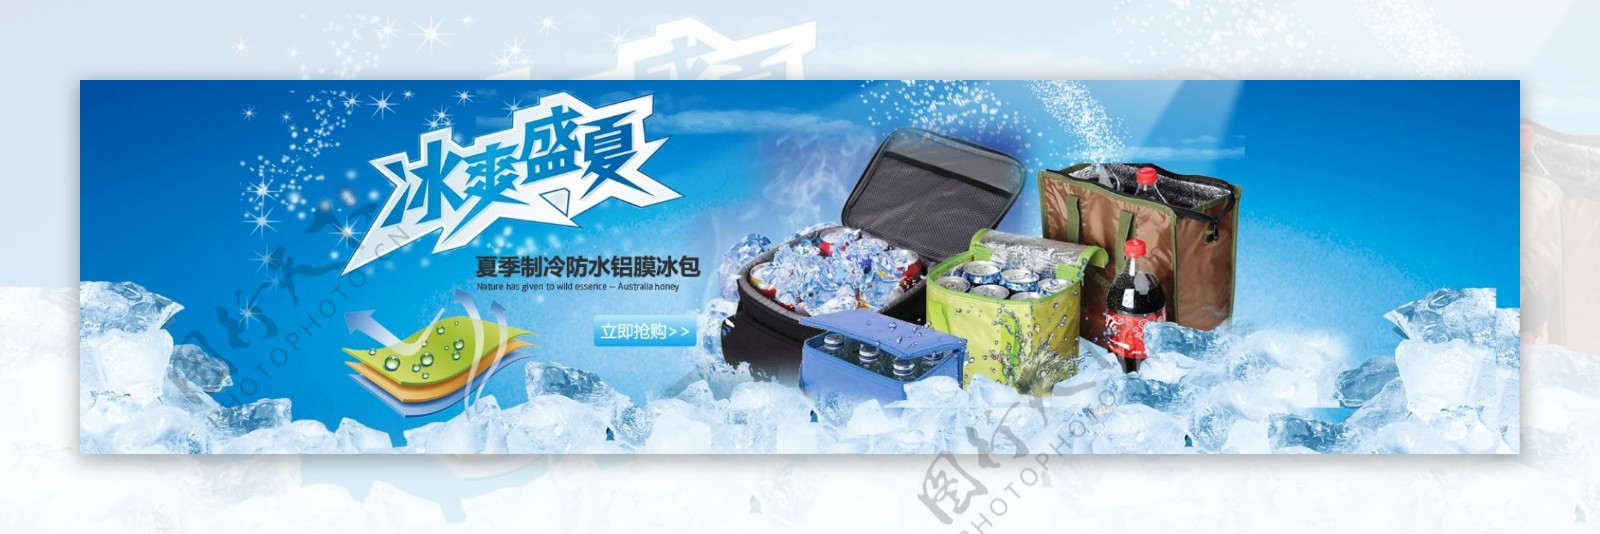 蓝色夏季凉爽降温用品冰袋促销海报